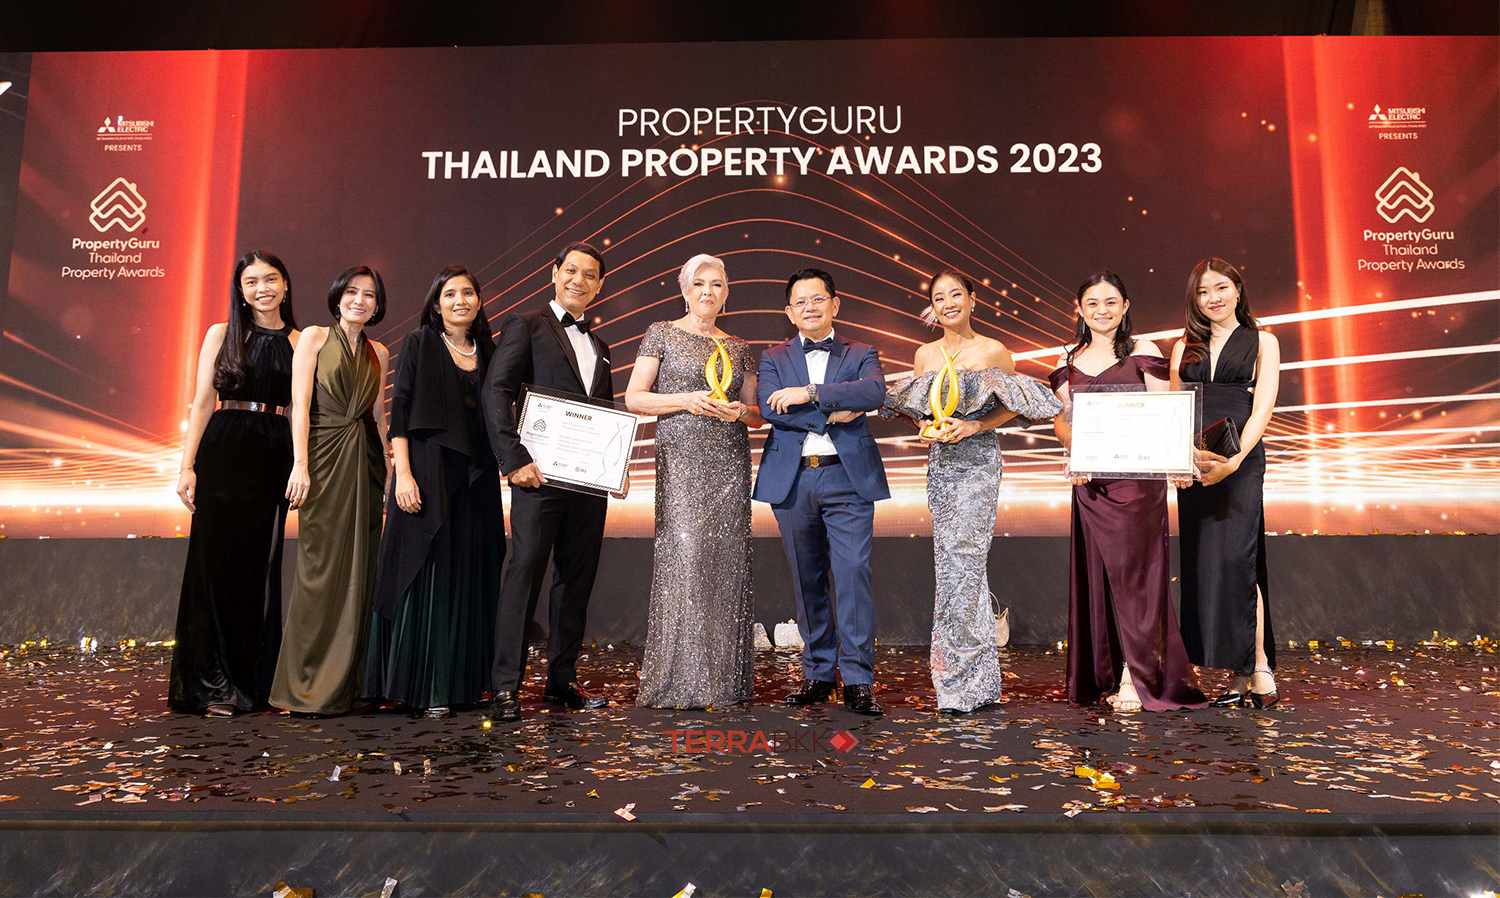 มอนท์เอซัวร์ ตอกย้ำความสำเร็จ คว้า 2 รางวัลใหญ่แห่งความภูมิใจจากเวที  “PropertyGuru Thailand Property Awards” ครั้งที่ 18